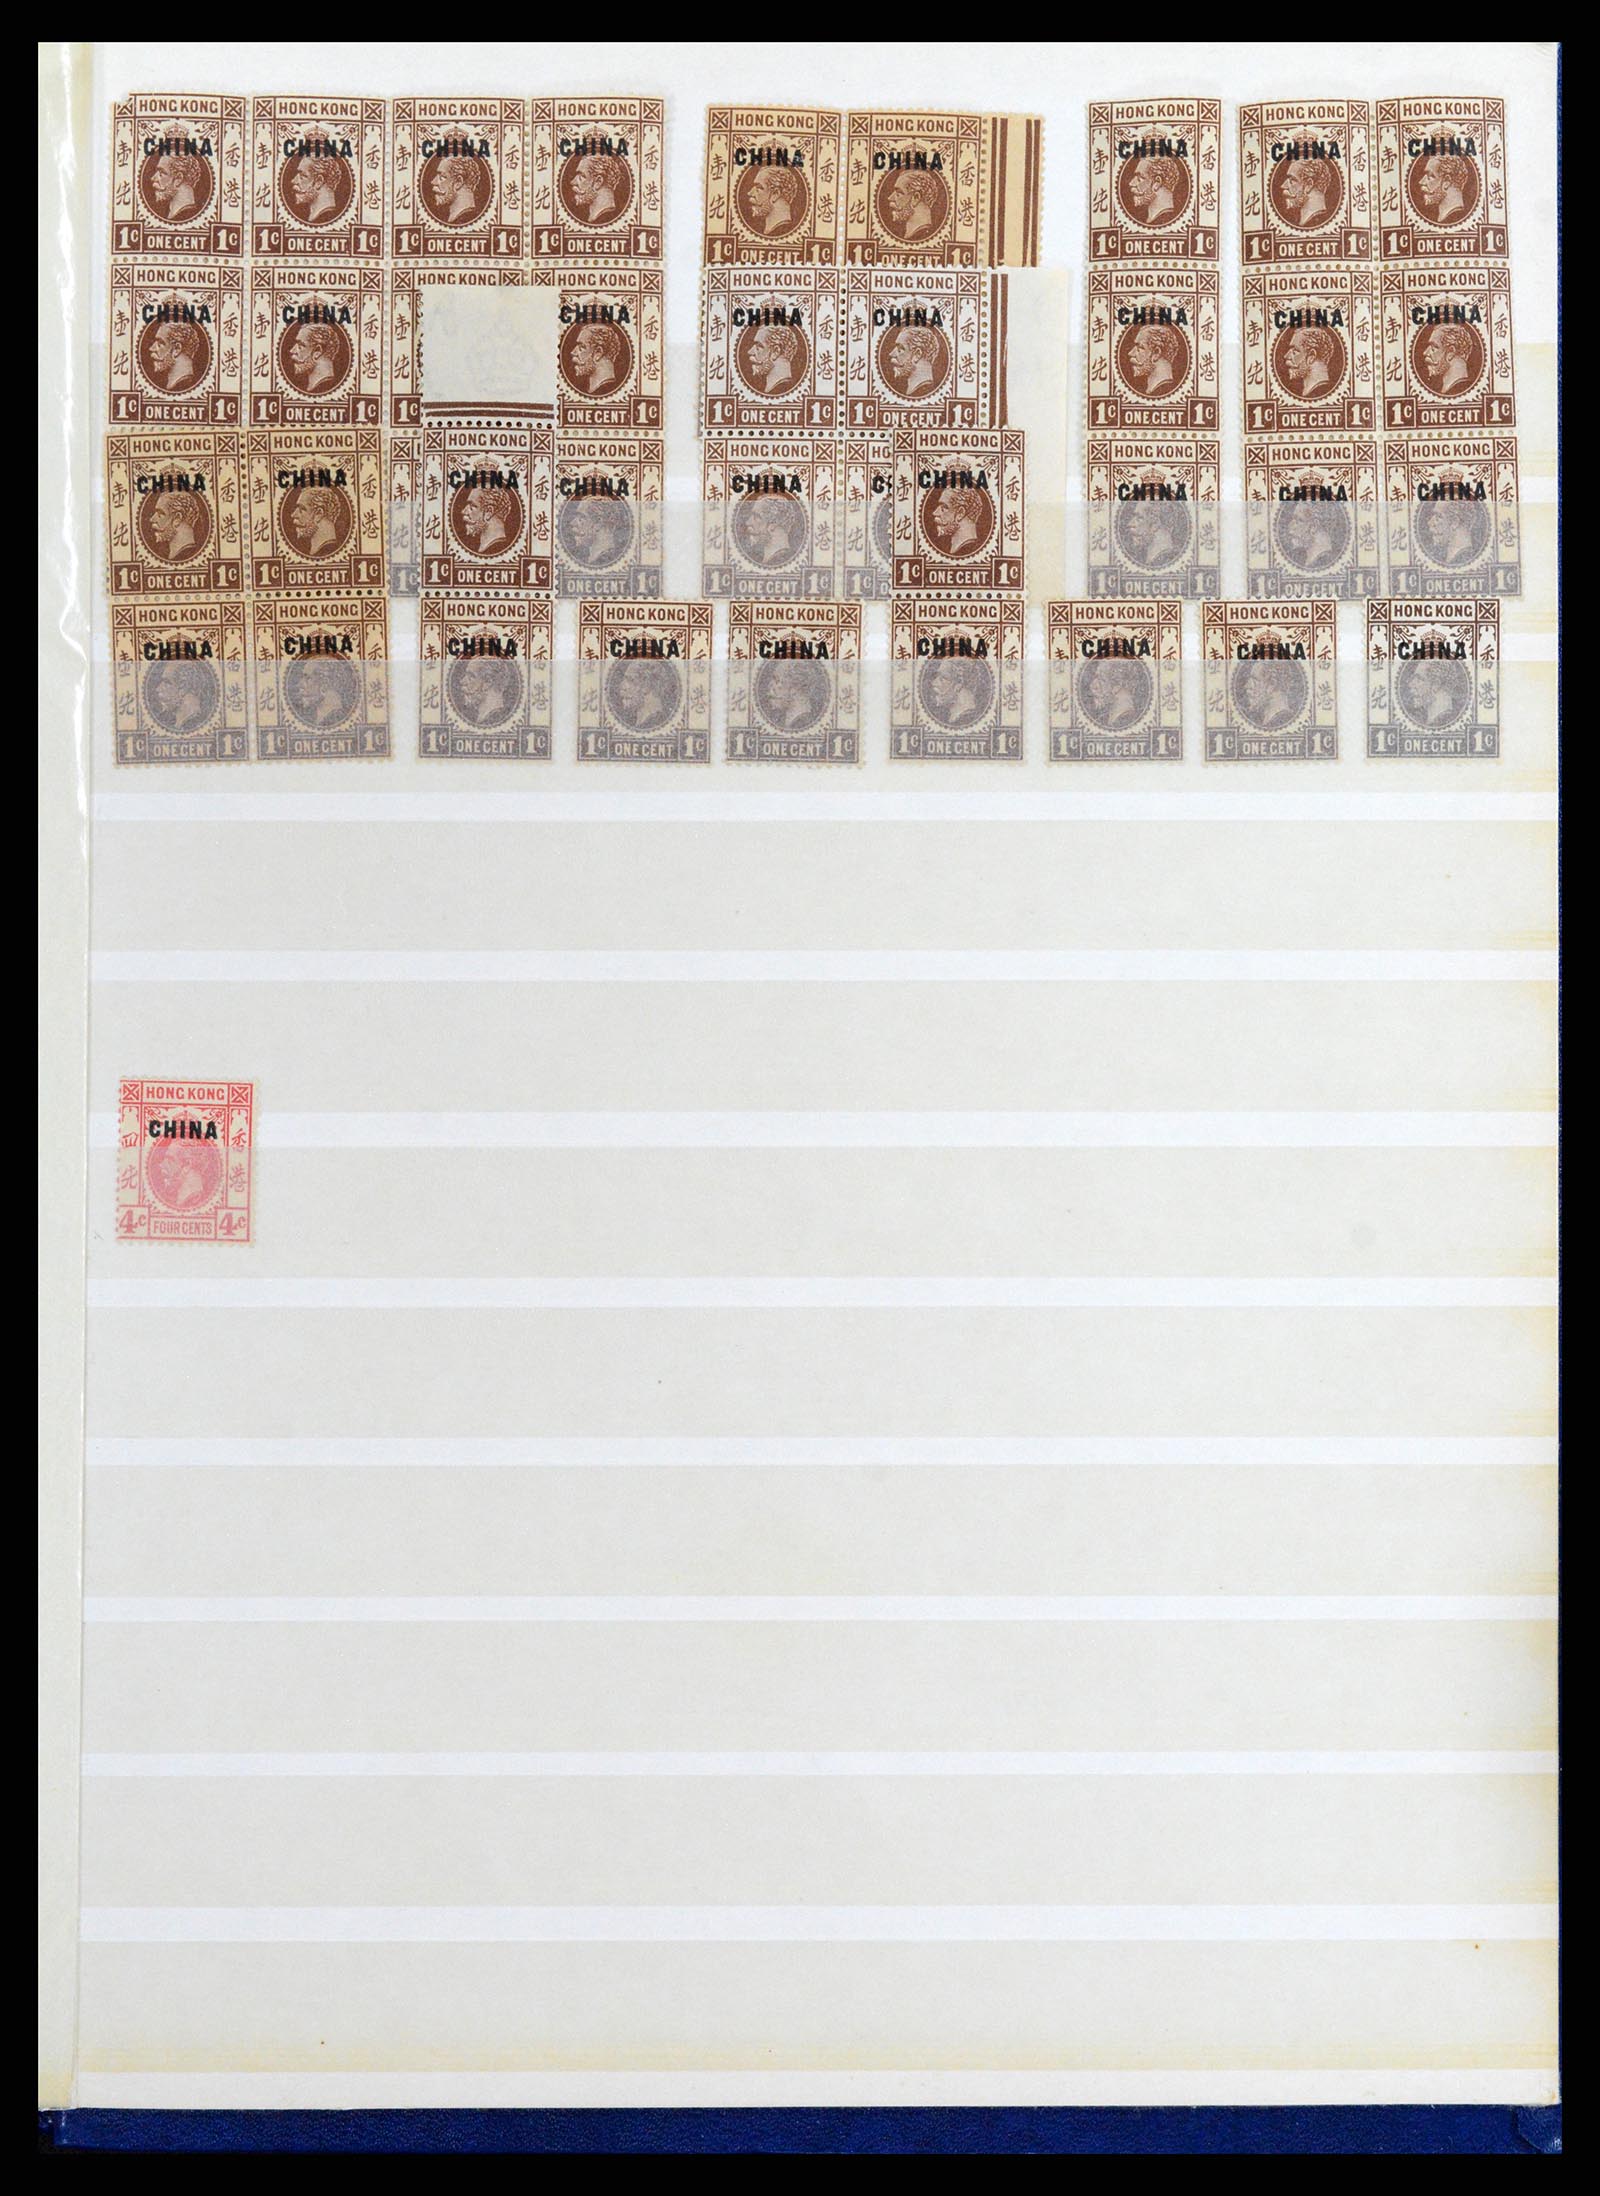 37358 052 - Stamp collection 37358 Hong Kong 1861-1997.